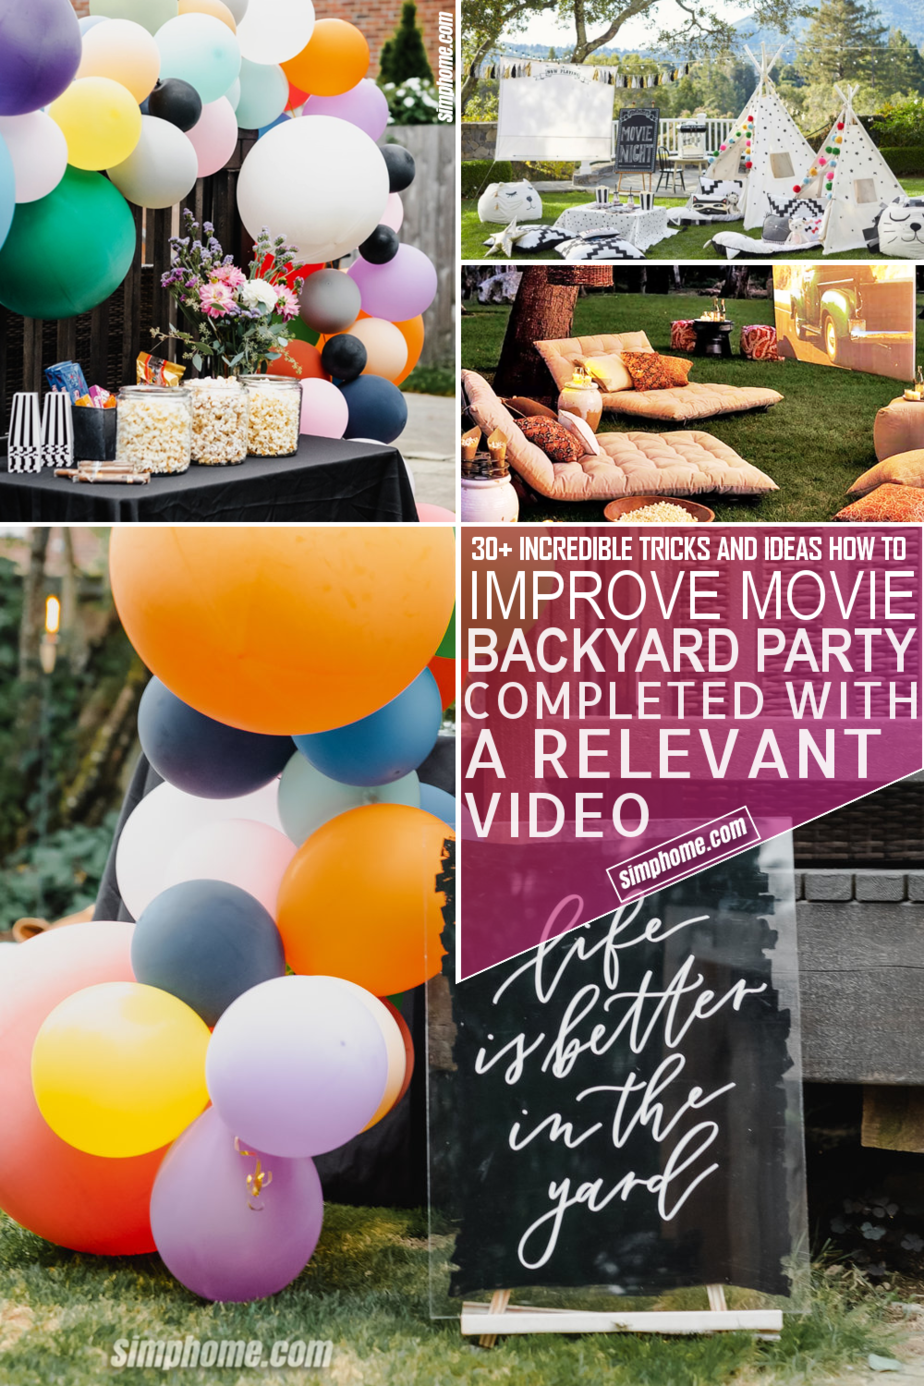 10 Ideas How to Improve Movie Backyard Party via Simphome.com Pinterest Image